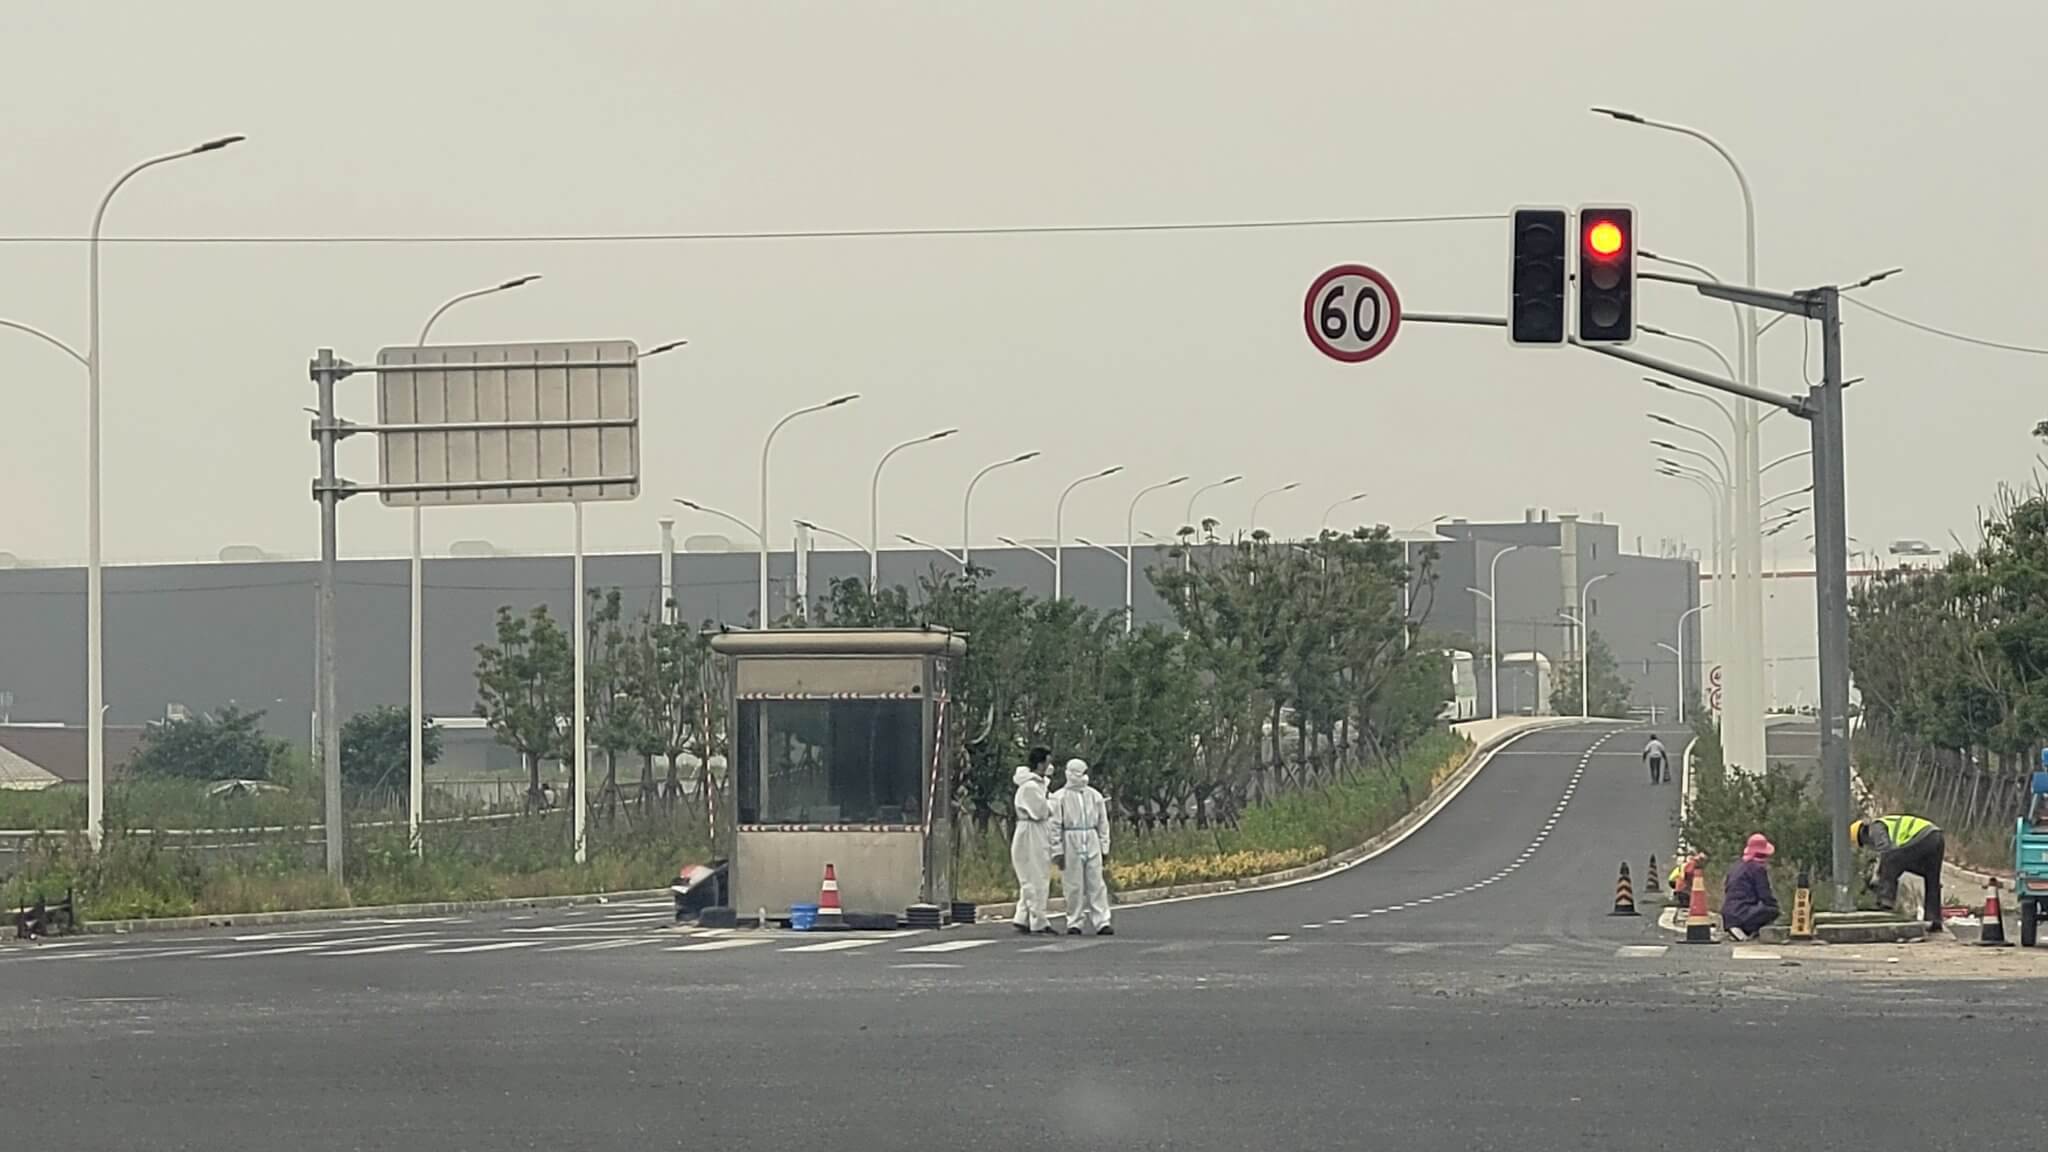 Tesla Gigafactory Shanghai werkt normaal terwijl China de verspreiding van Covid-19 probeert te voorkomen